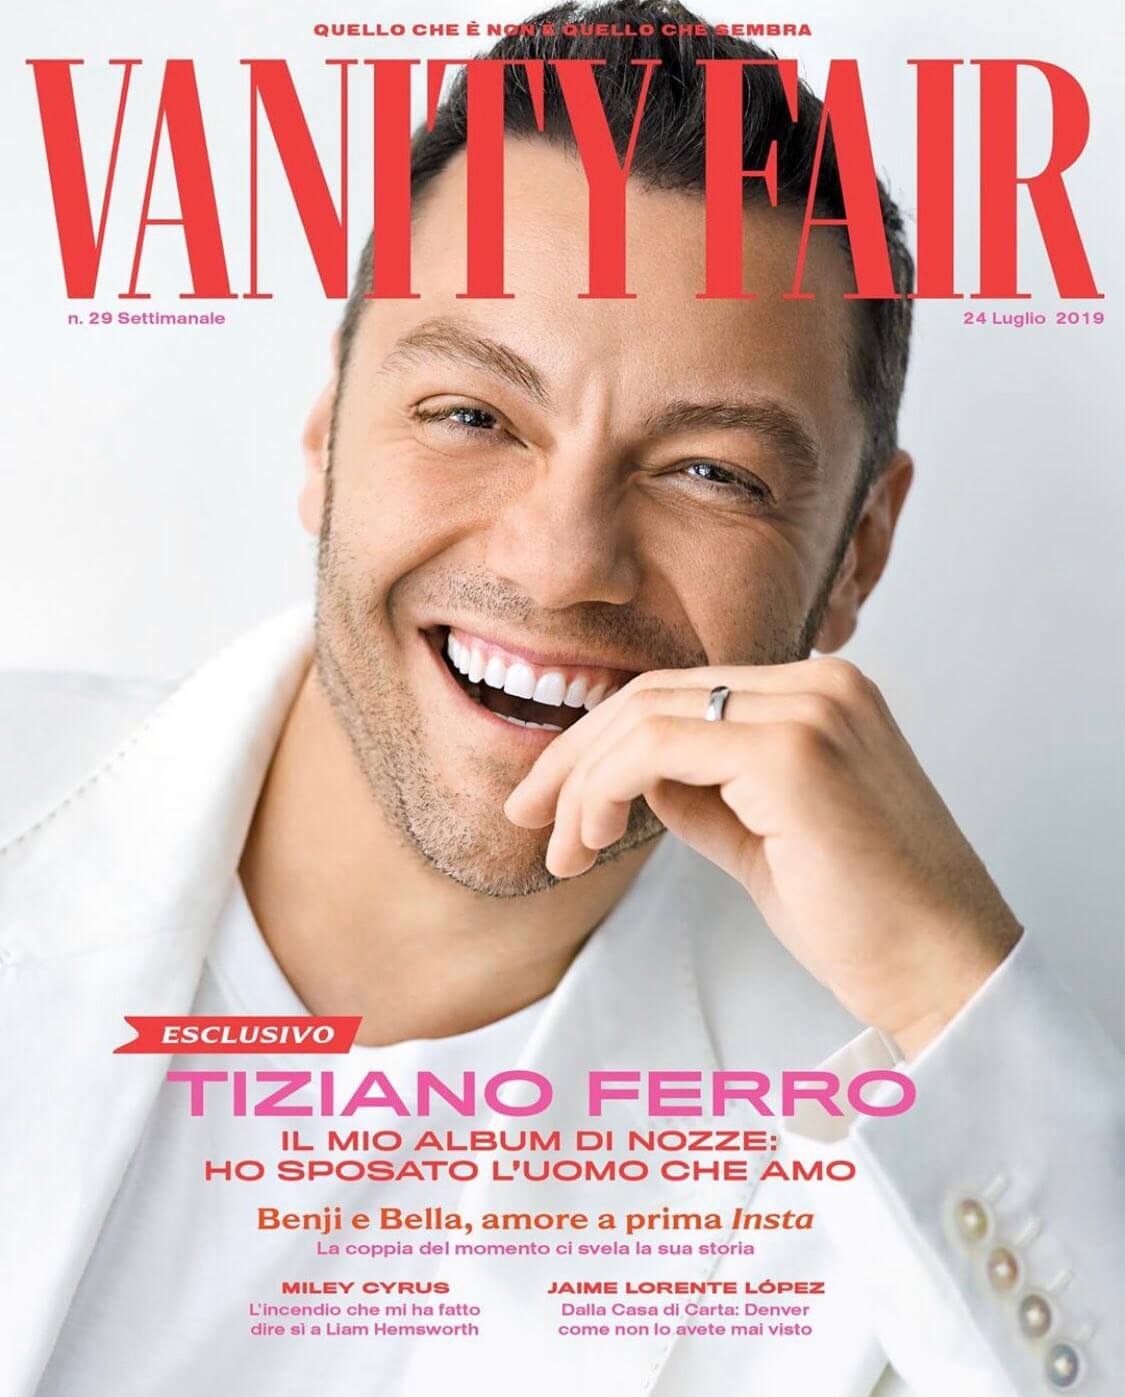 Tiziano Ferro sposo ringrazia i fan ma Mario Adinolfi attacca: ecco la cover di Vanity Fair - Tiziano Ferro sposo Vanity Fair - Gay.it